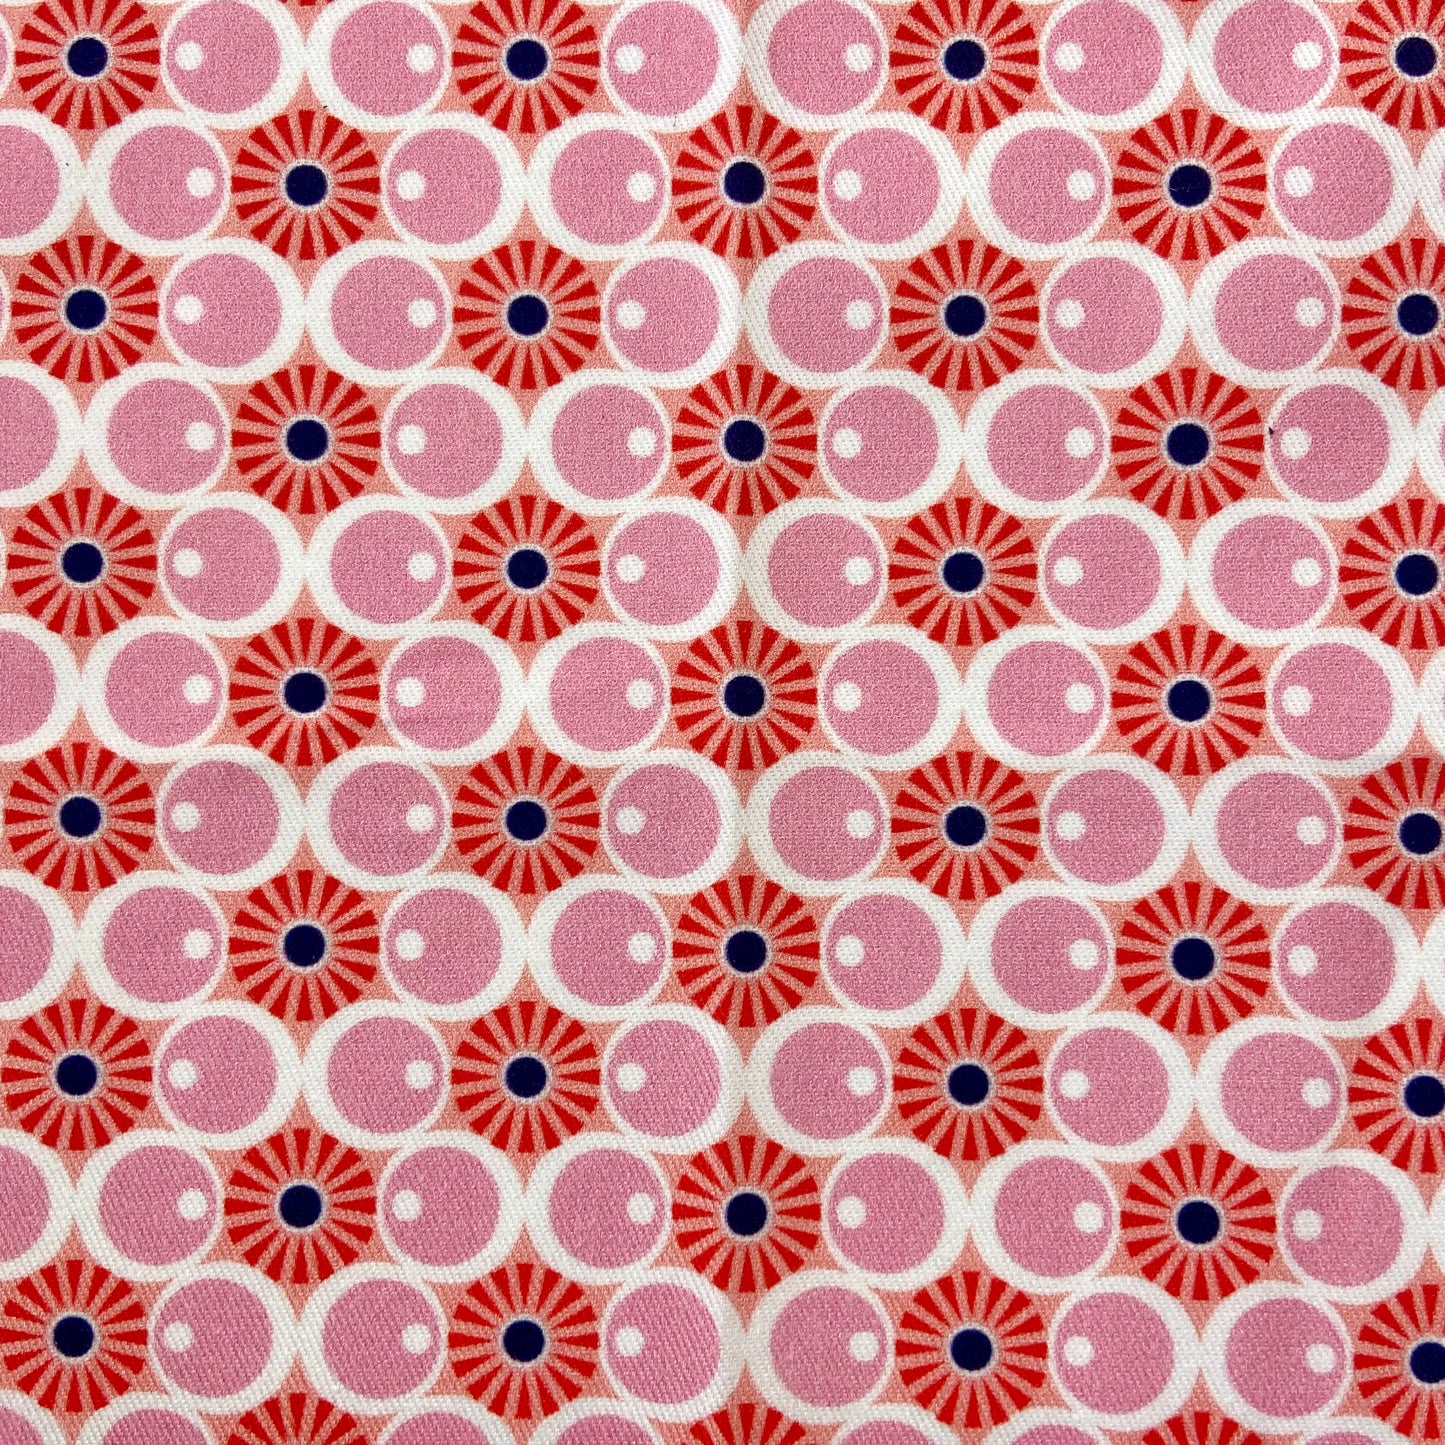 Sergé de coton imprimé motifs rose bulles années 50 mid-century vintage pop soleil orange cercles ronds 